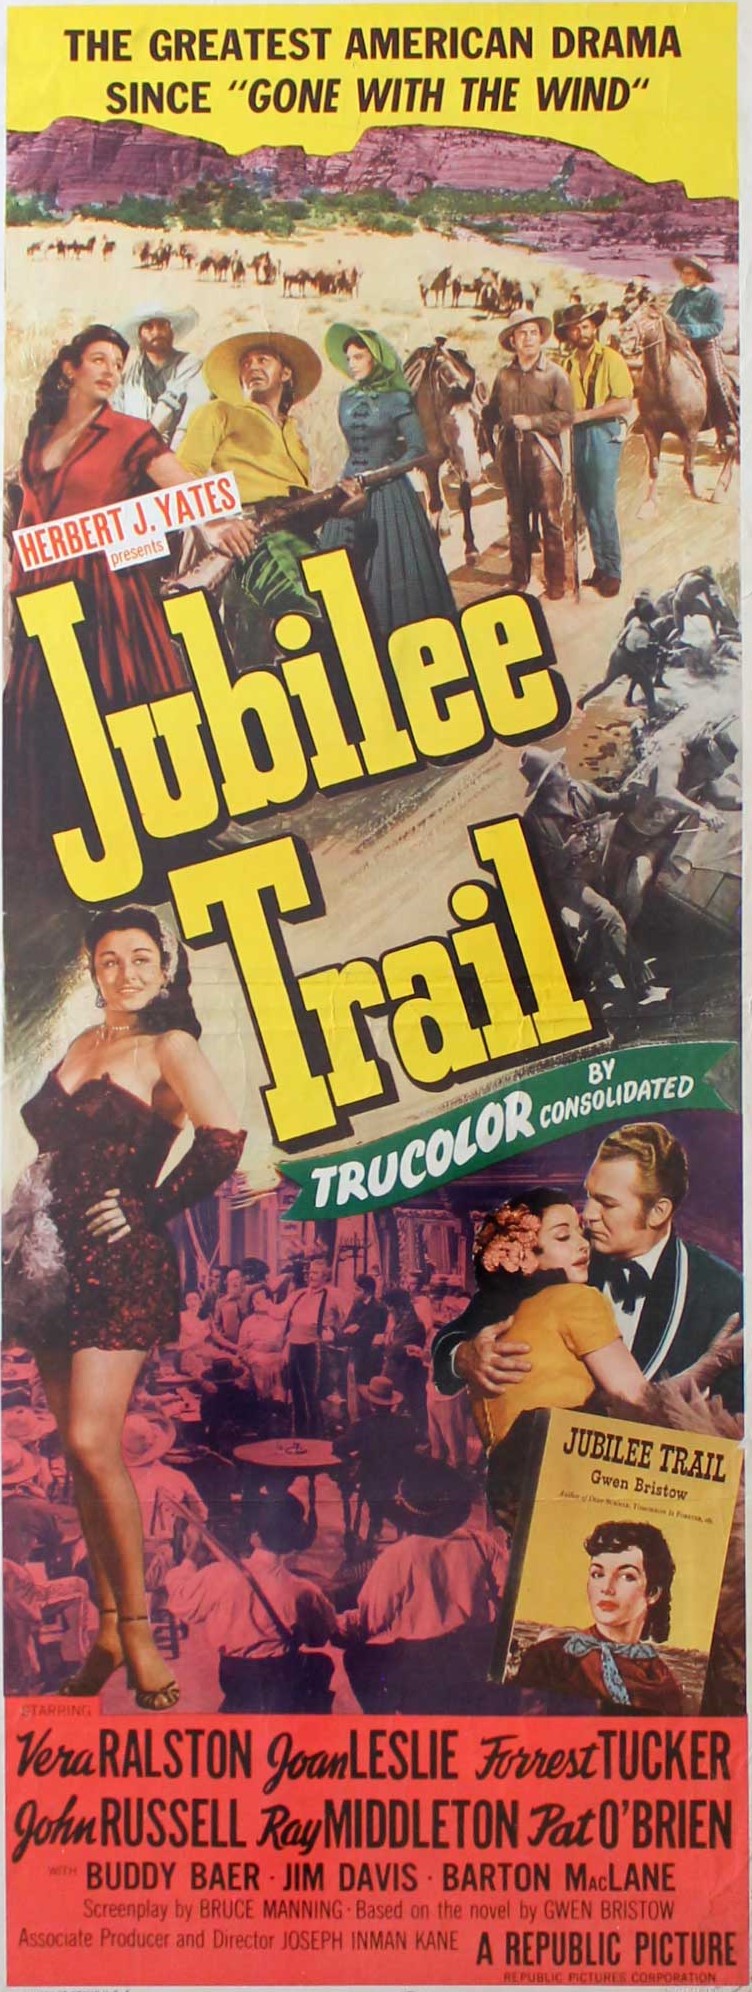 TR2 Jubilee Trail 1954.jpg